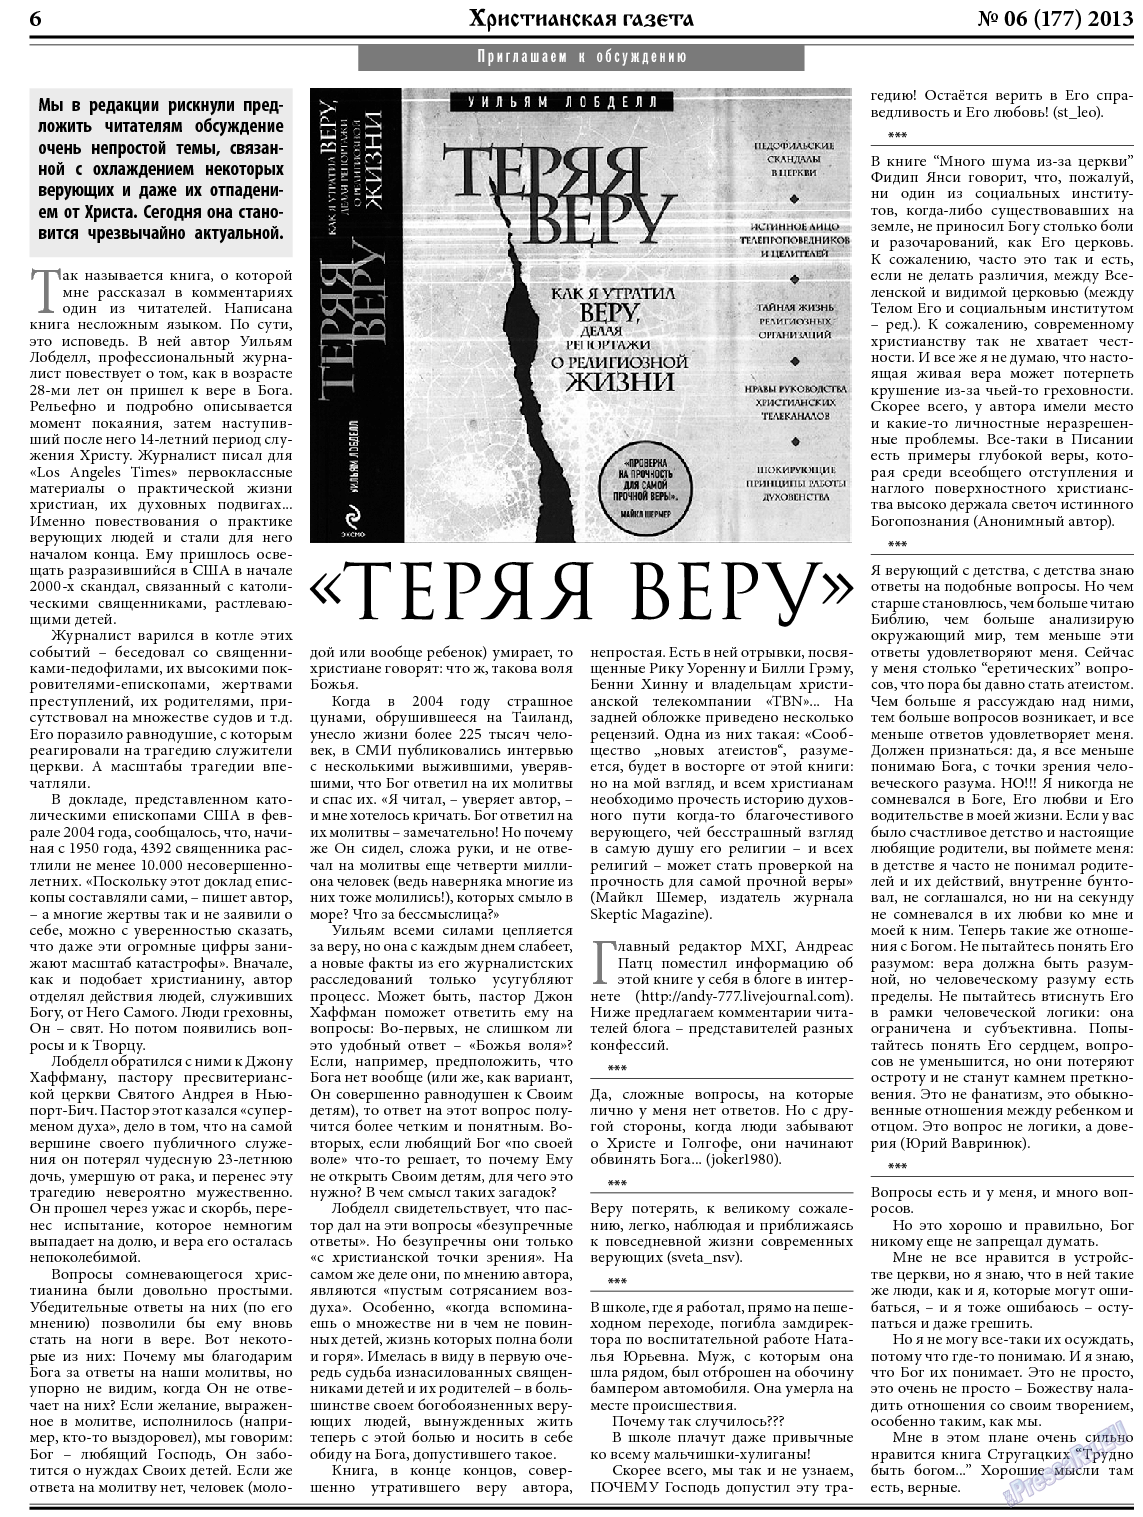 Христианская газета, газета. 2013 №6 стр.6